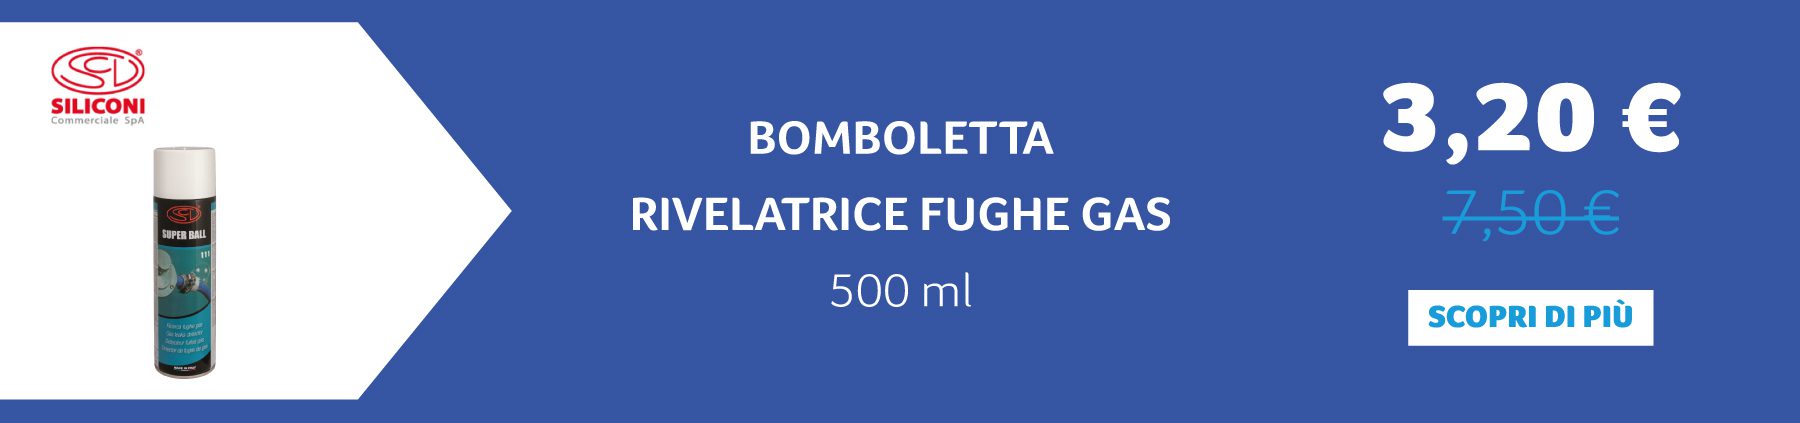 Siliconi - Bomboletta rivelatrice fughe gas 500 ml. 3,20 € anziché 7,50 €